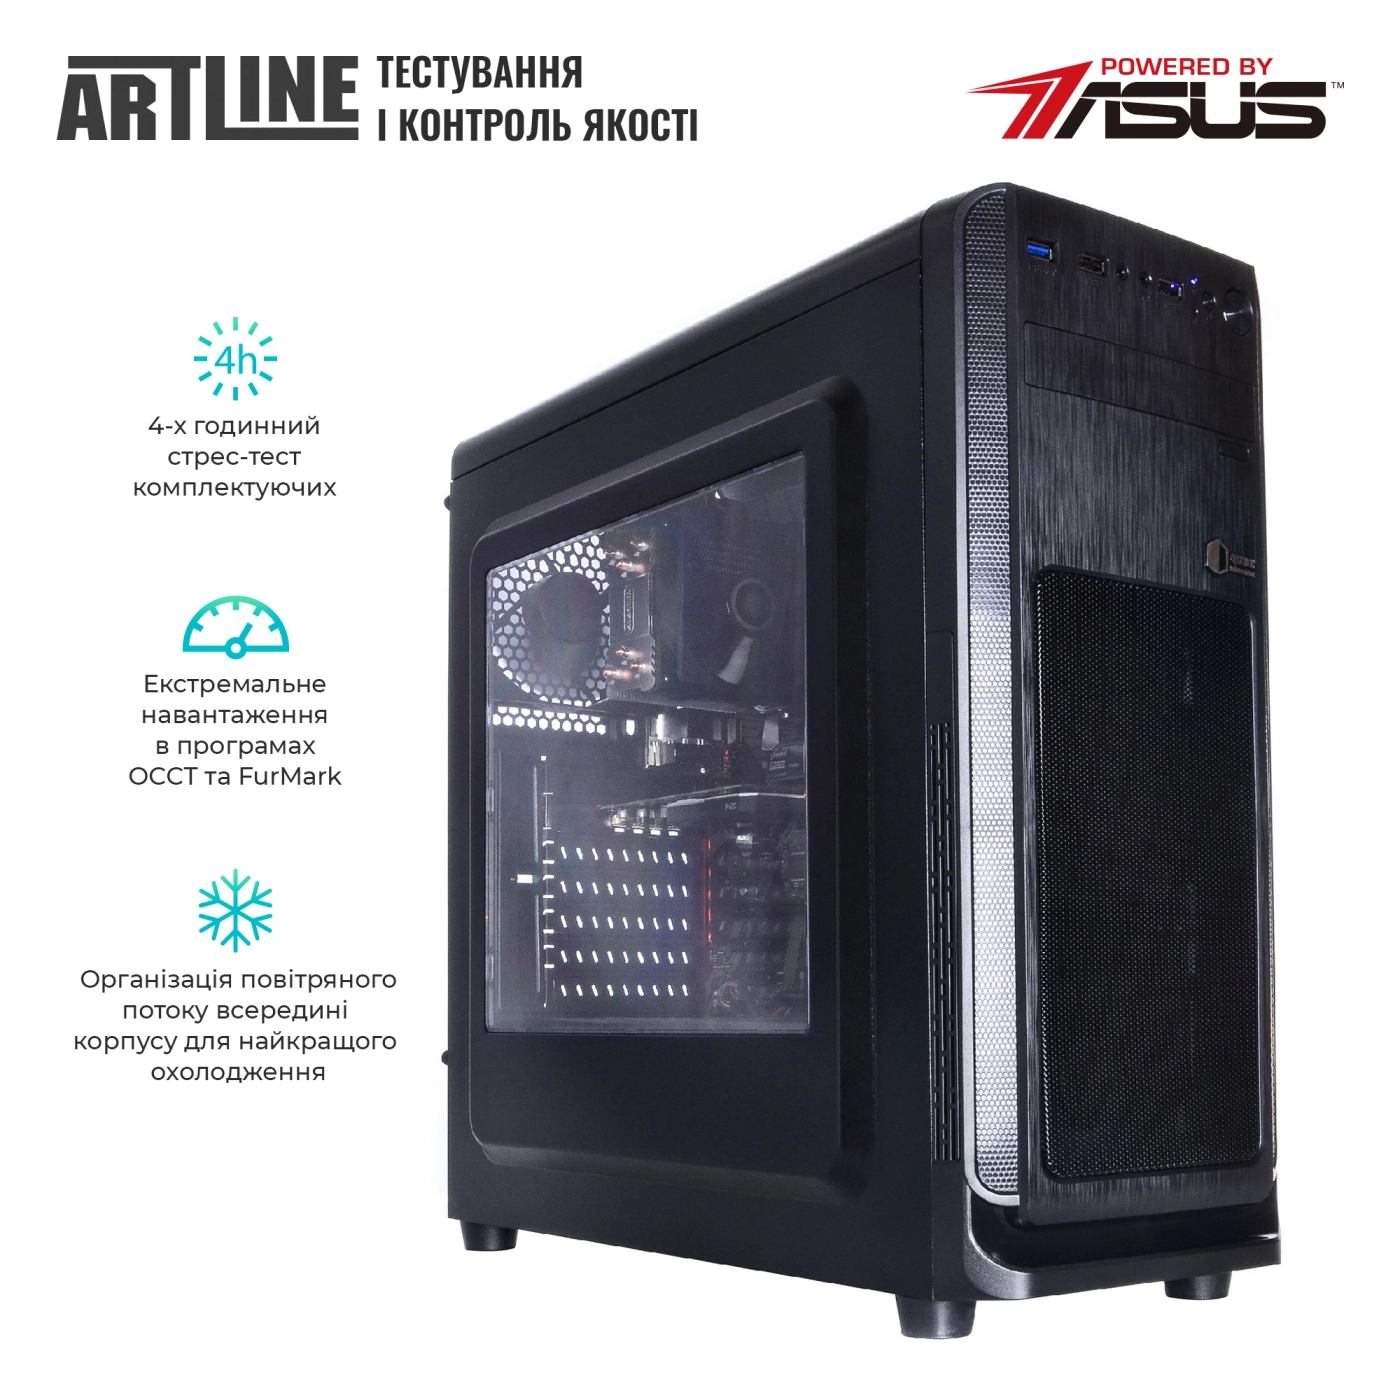 Купить Сервер ARTLINE Business T25v19 - фото 6